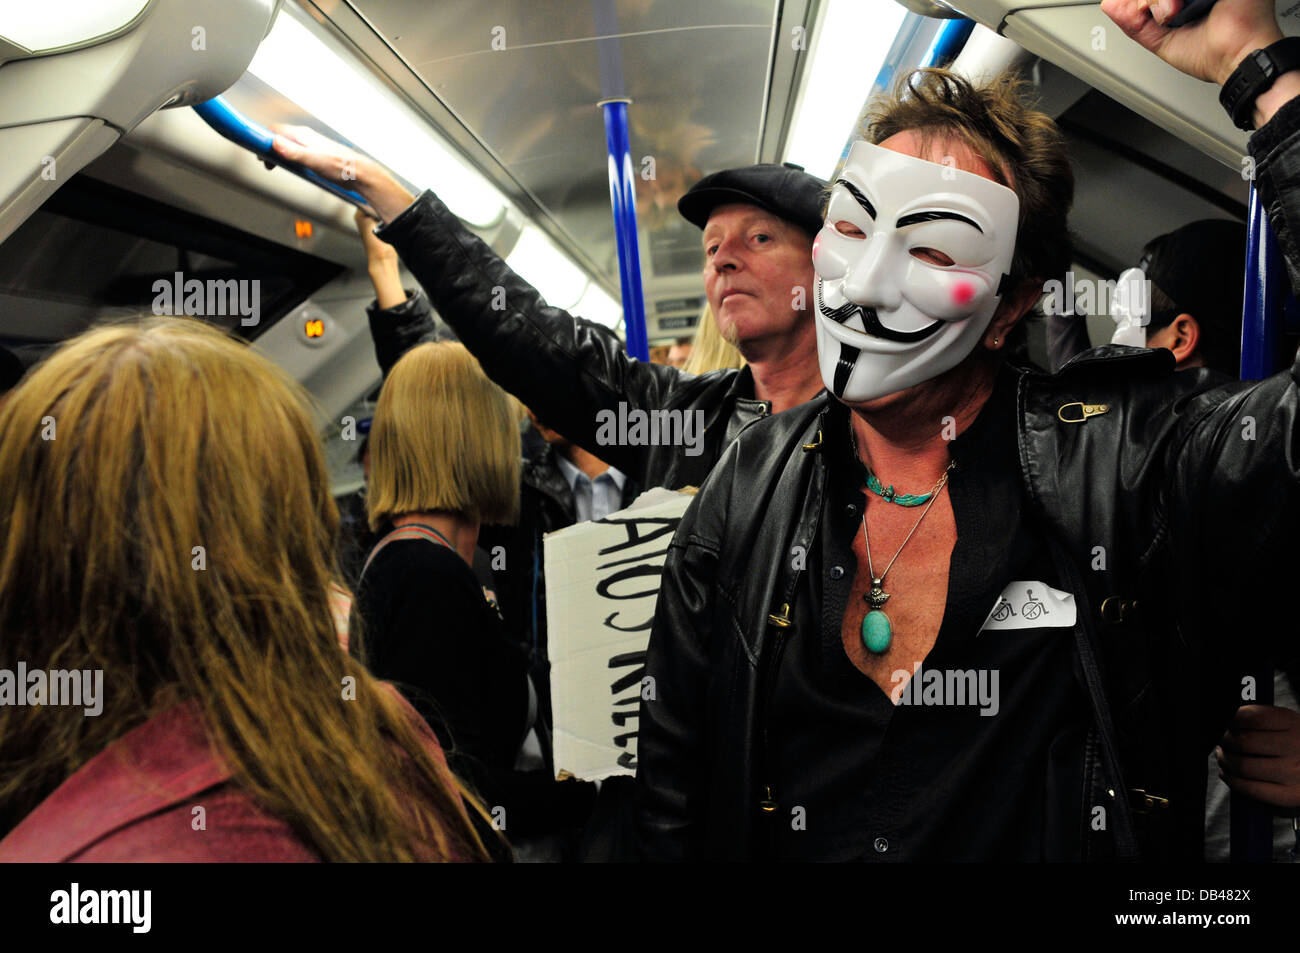 Un homme portant un masque anonyme voyages dans le métro, London, UK Banque D'Images